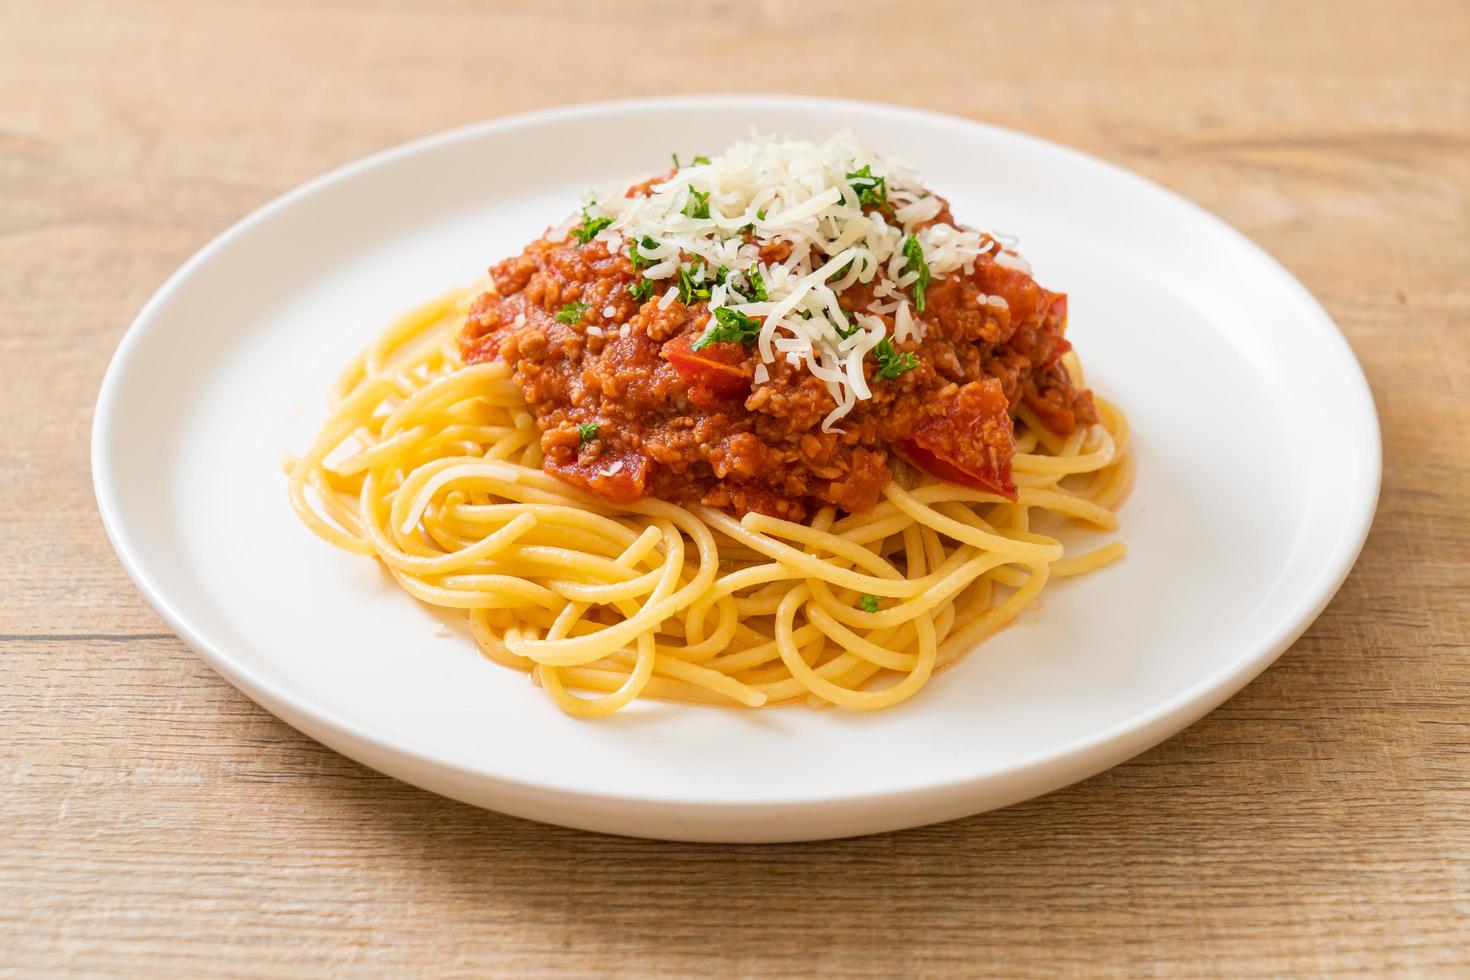 spaghettis au porc bolognaise ou spaghettis à la sauce tomate au porc haché - style cuisine italienne photo